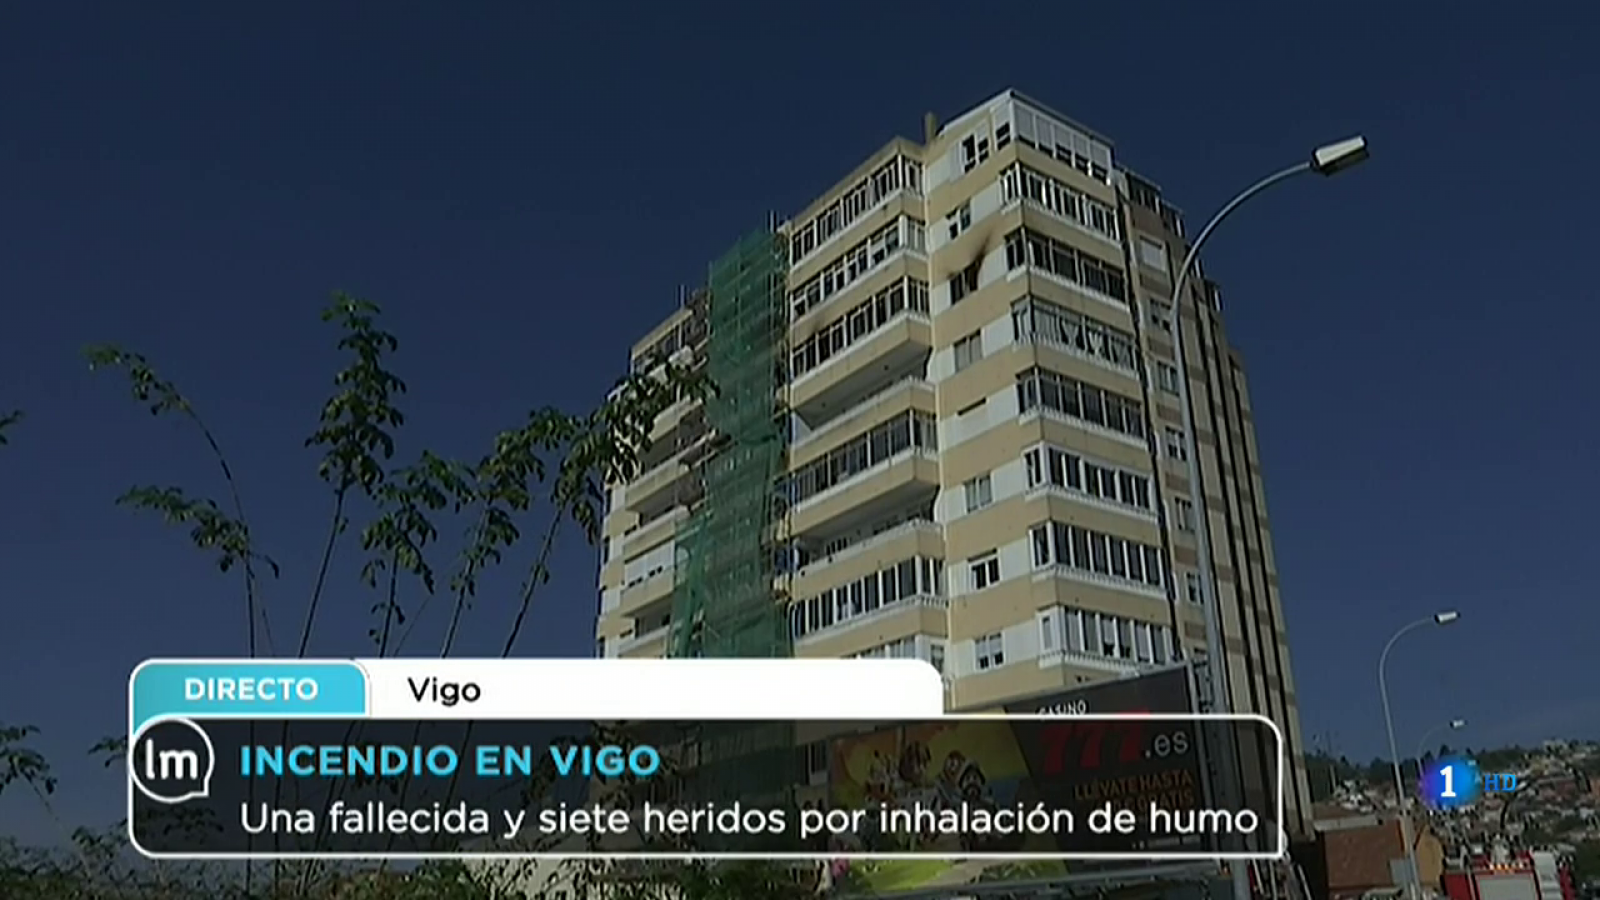 La Mañana - Una fallecida y siete heridos por inhalación de humo en Vigo